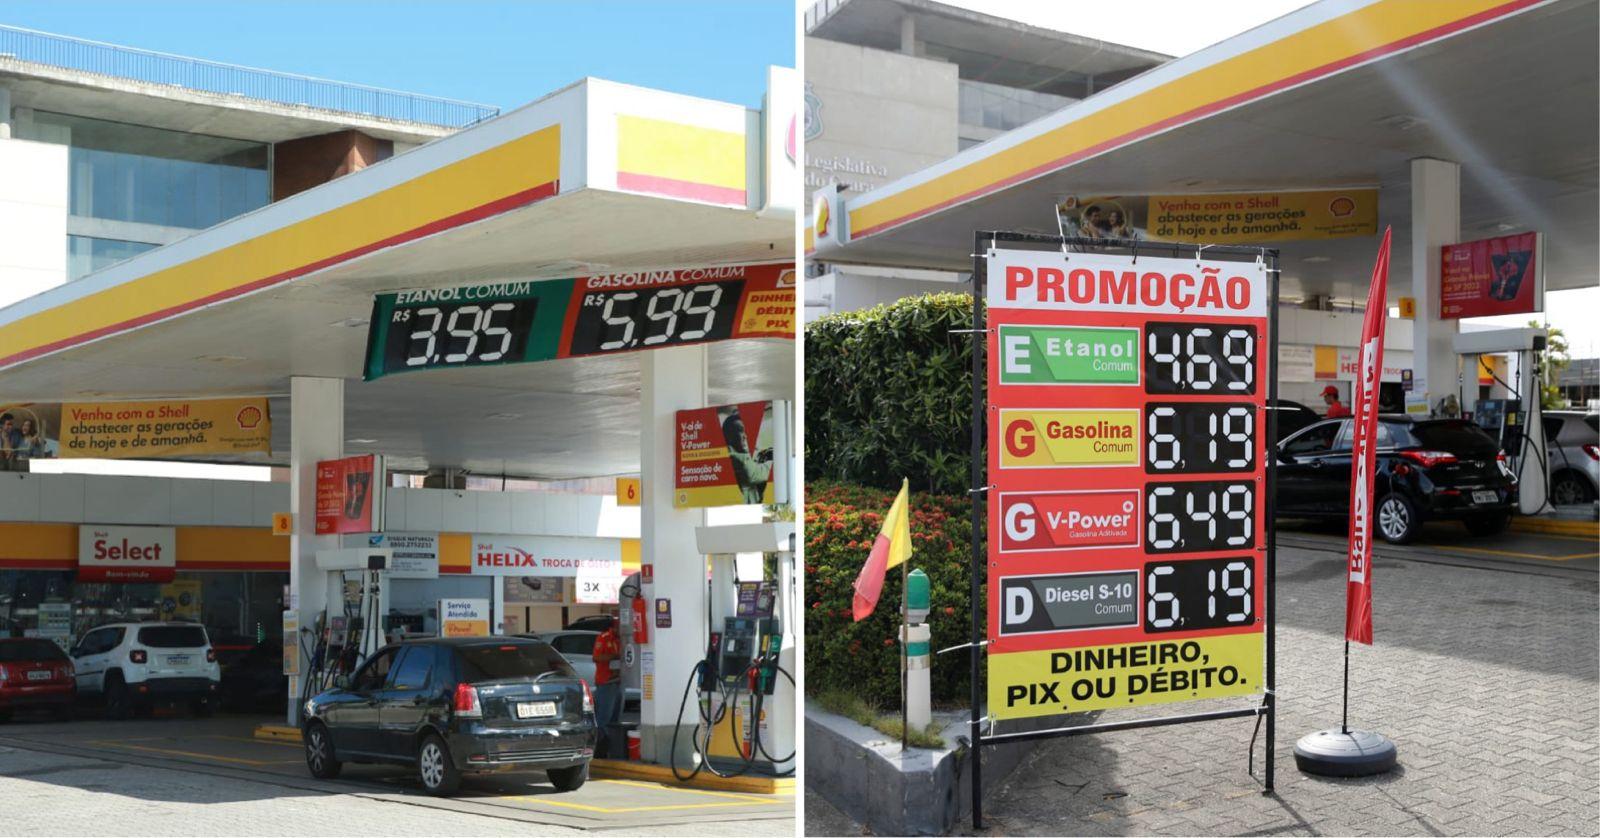 Montagem de fotos mostra antes e depois de preços aplicados em posto de combustíveis